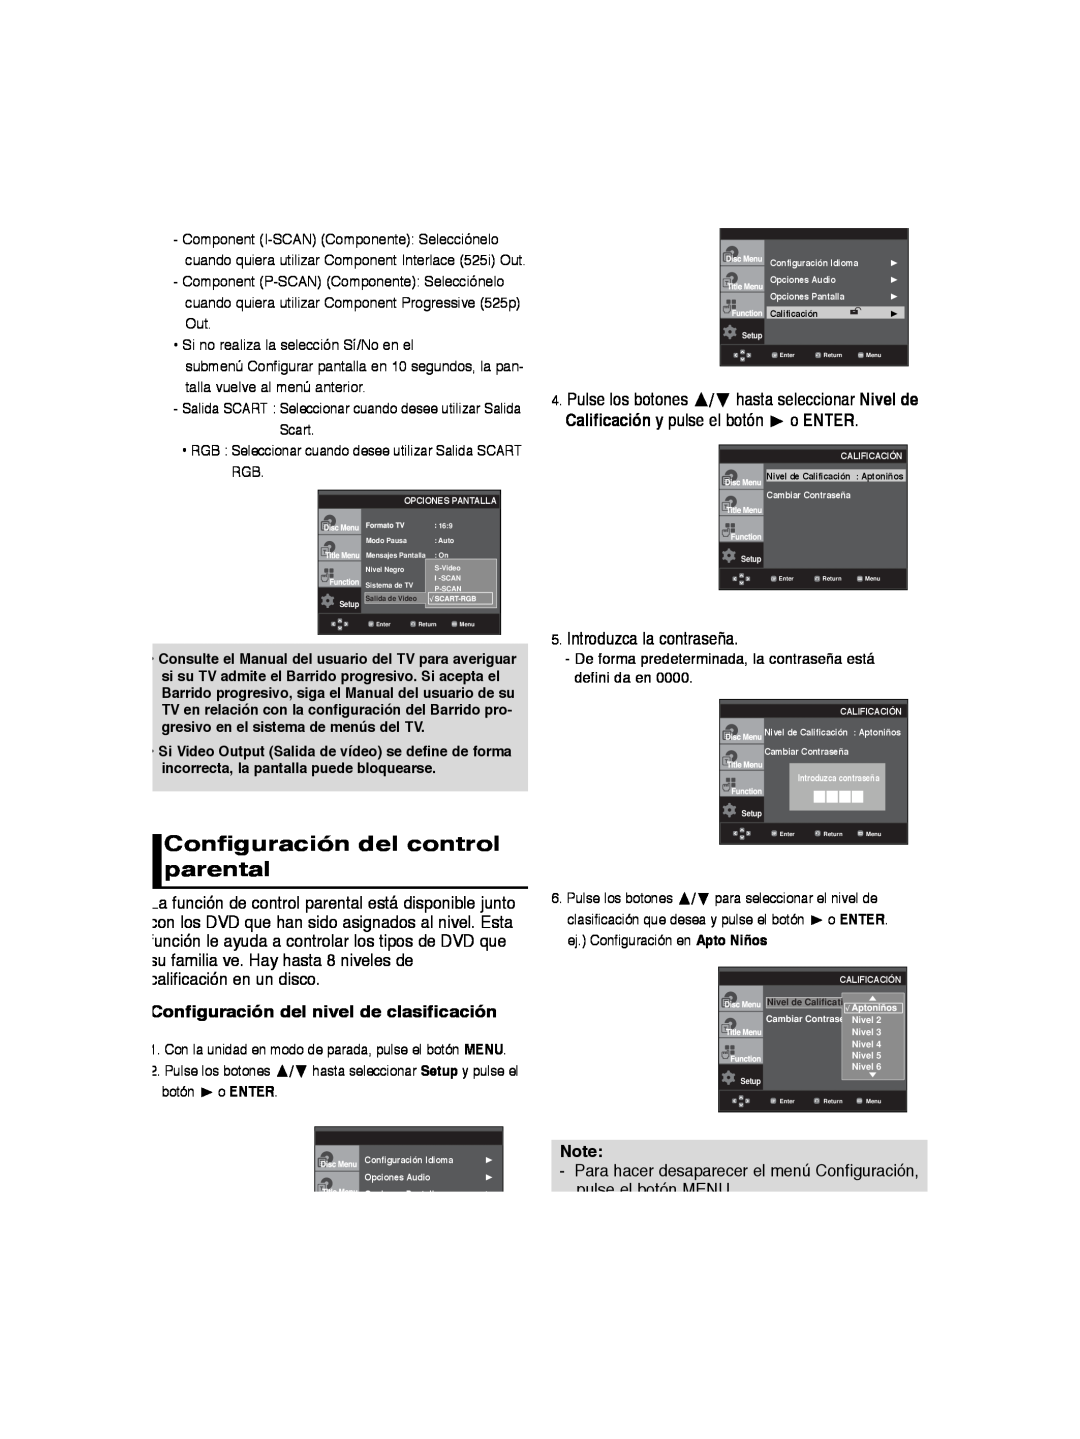 Samsung DVD-P260K/AFR manual Configuración del control parental, Configuración del nivel de clasificación, o ENTER, botón 